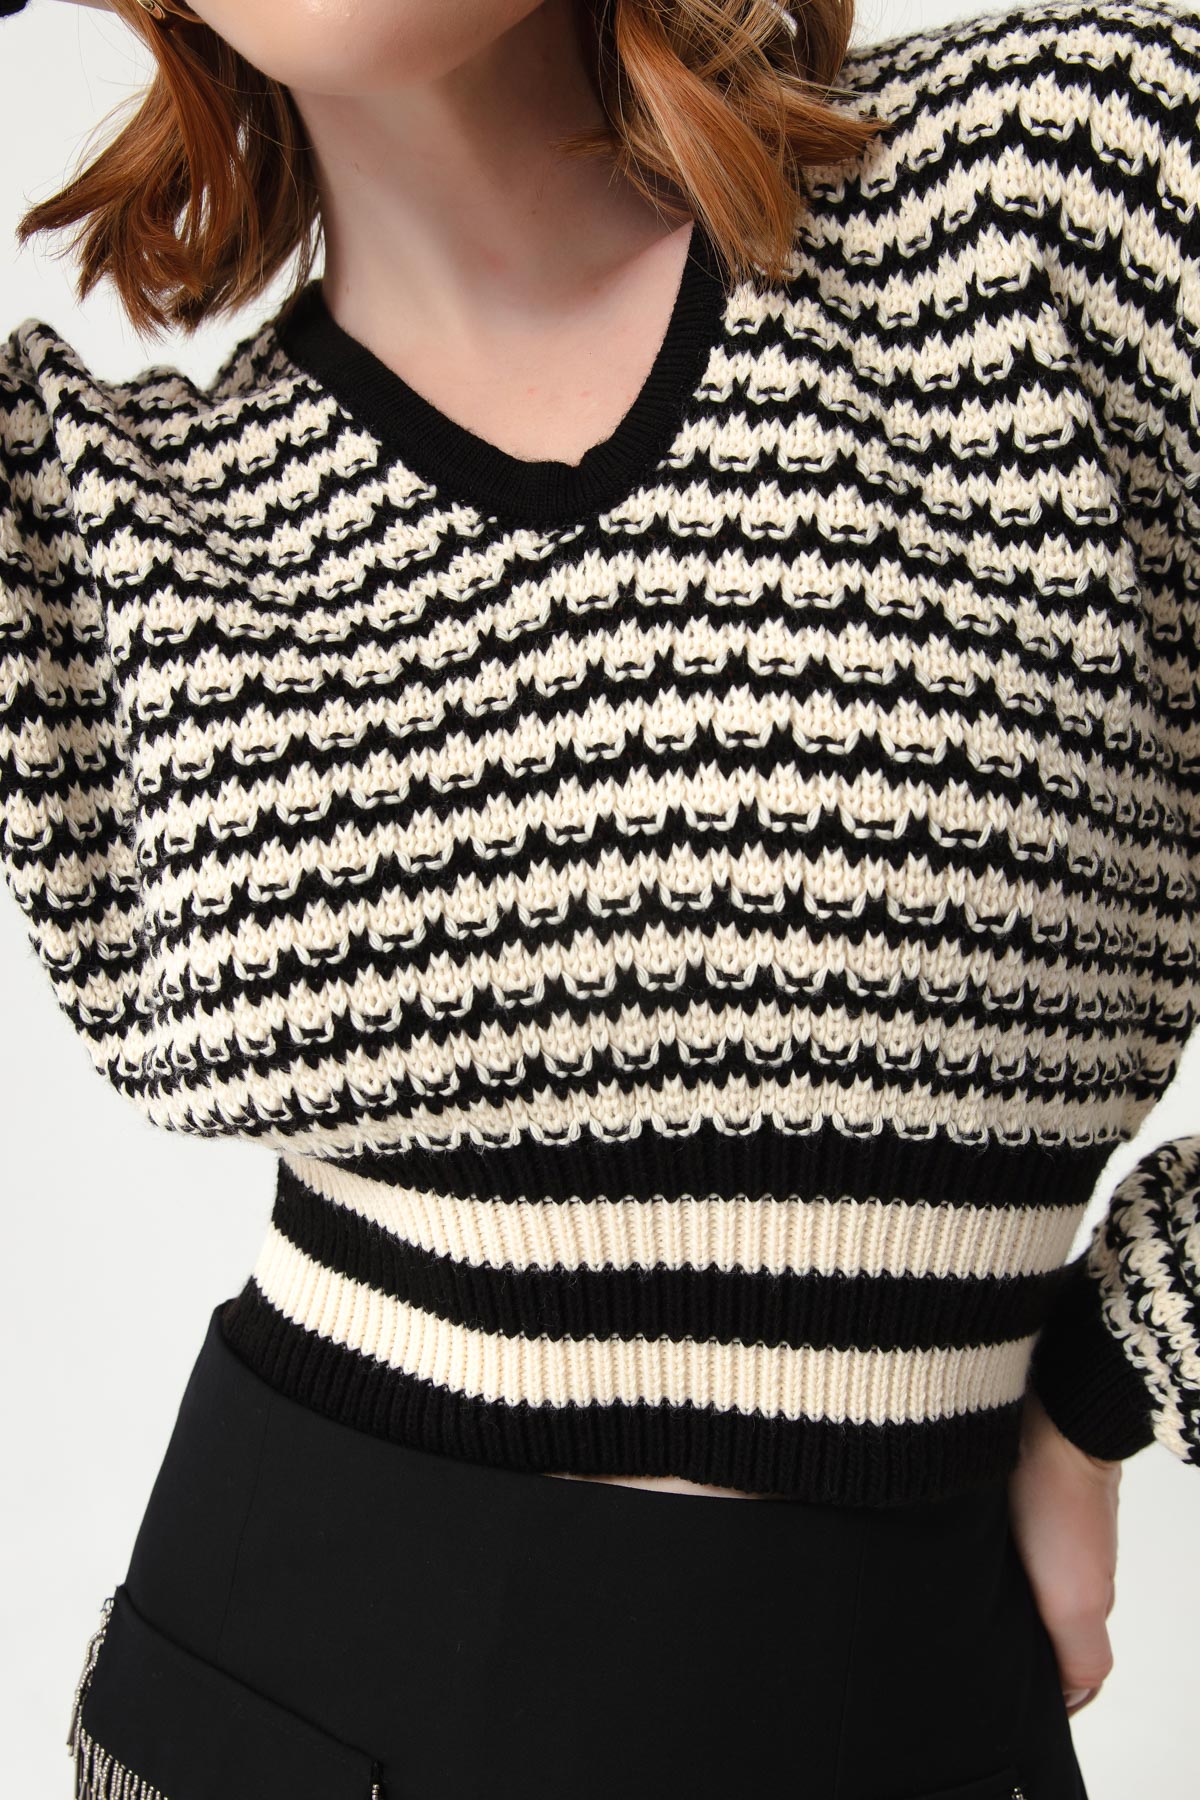 Women's Black V-Neck Striped Knitwear Sweater